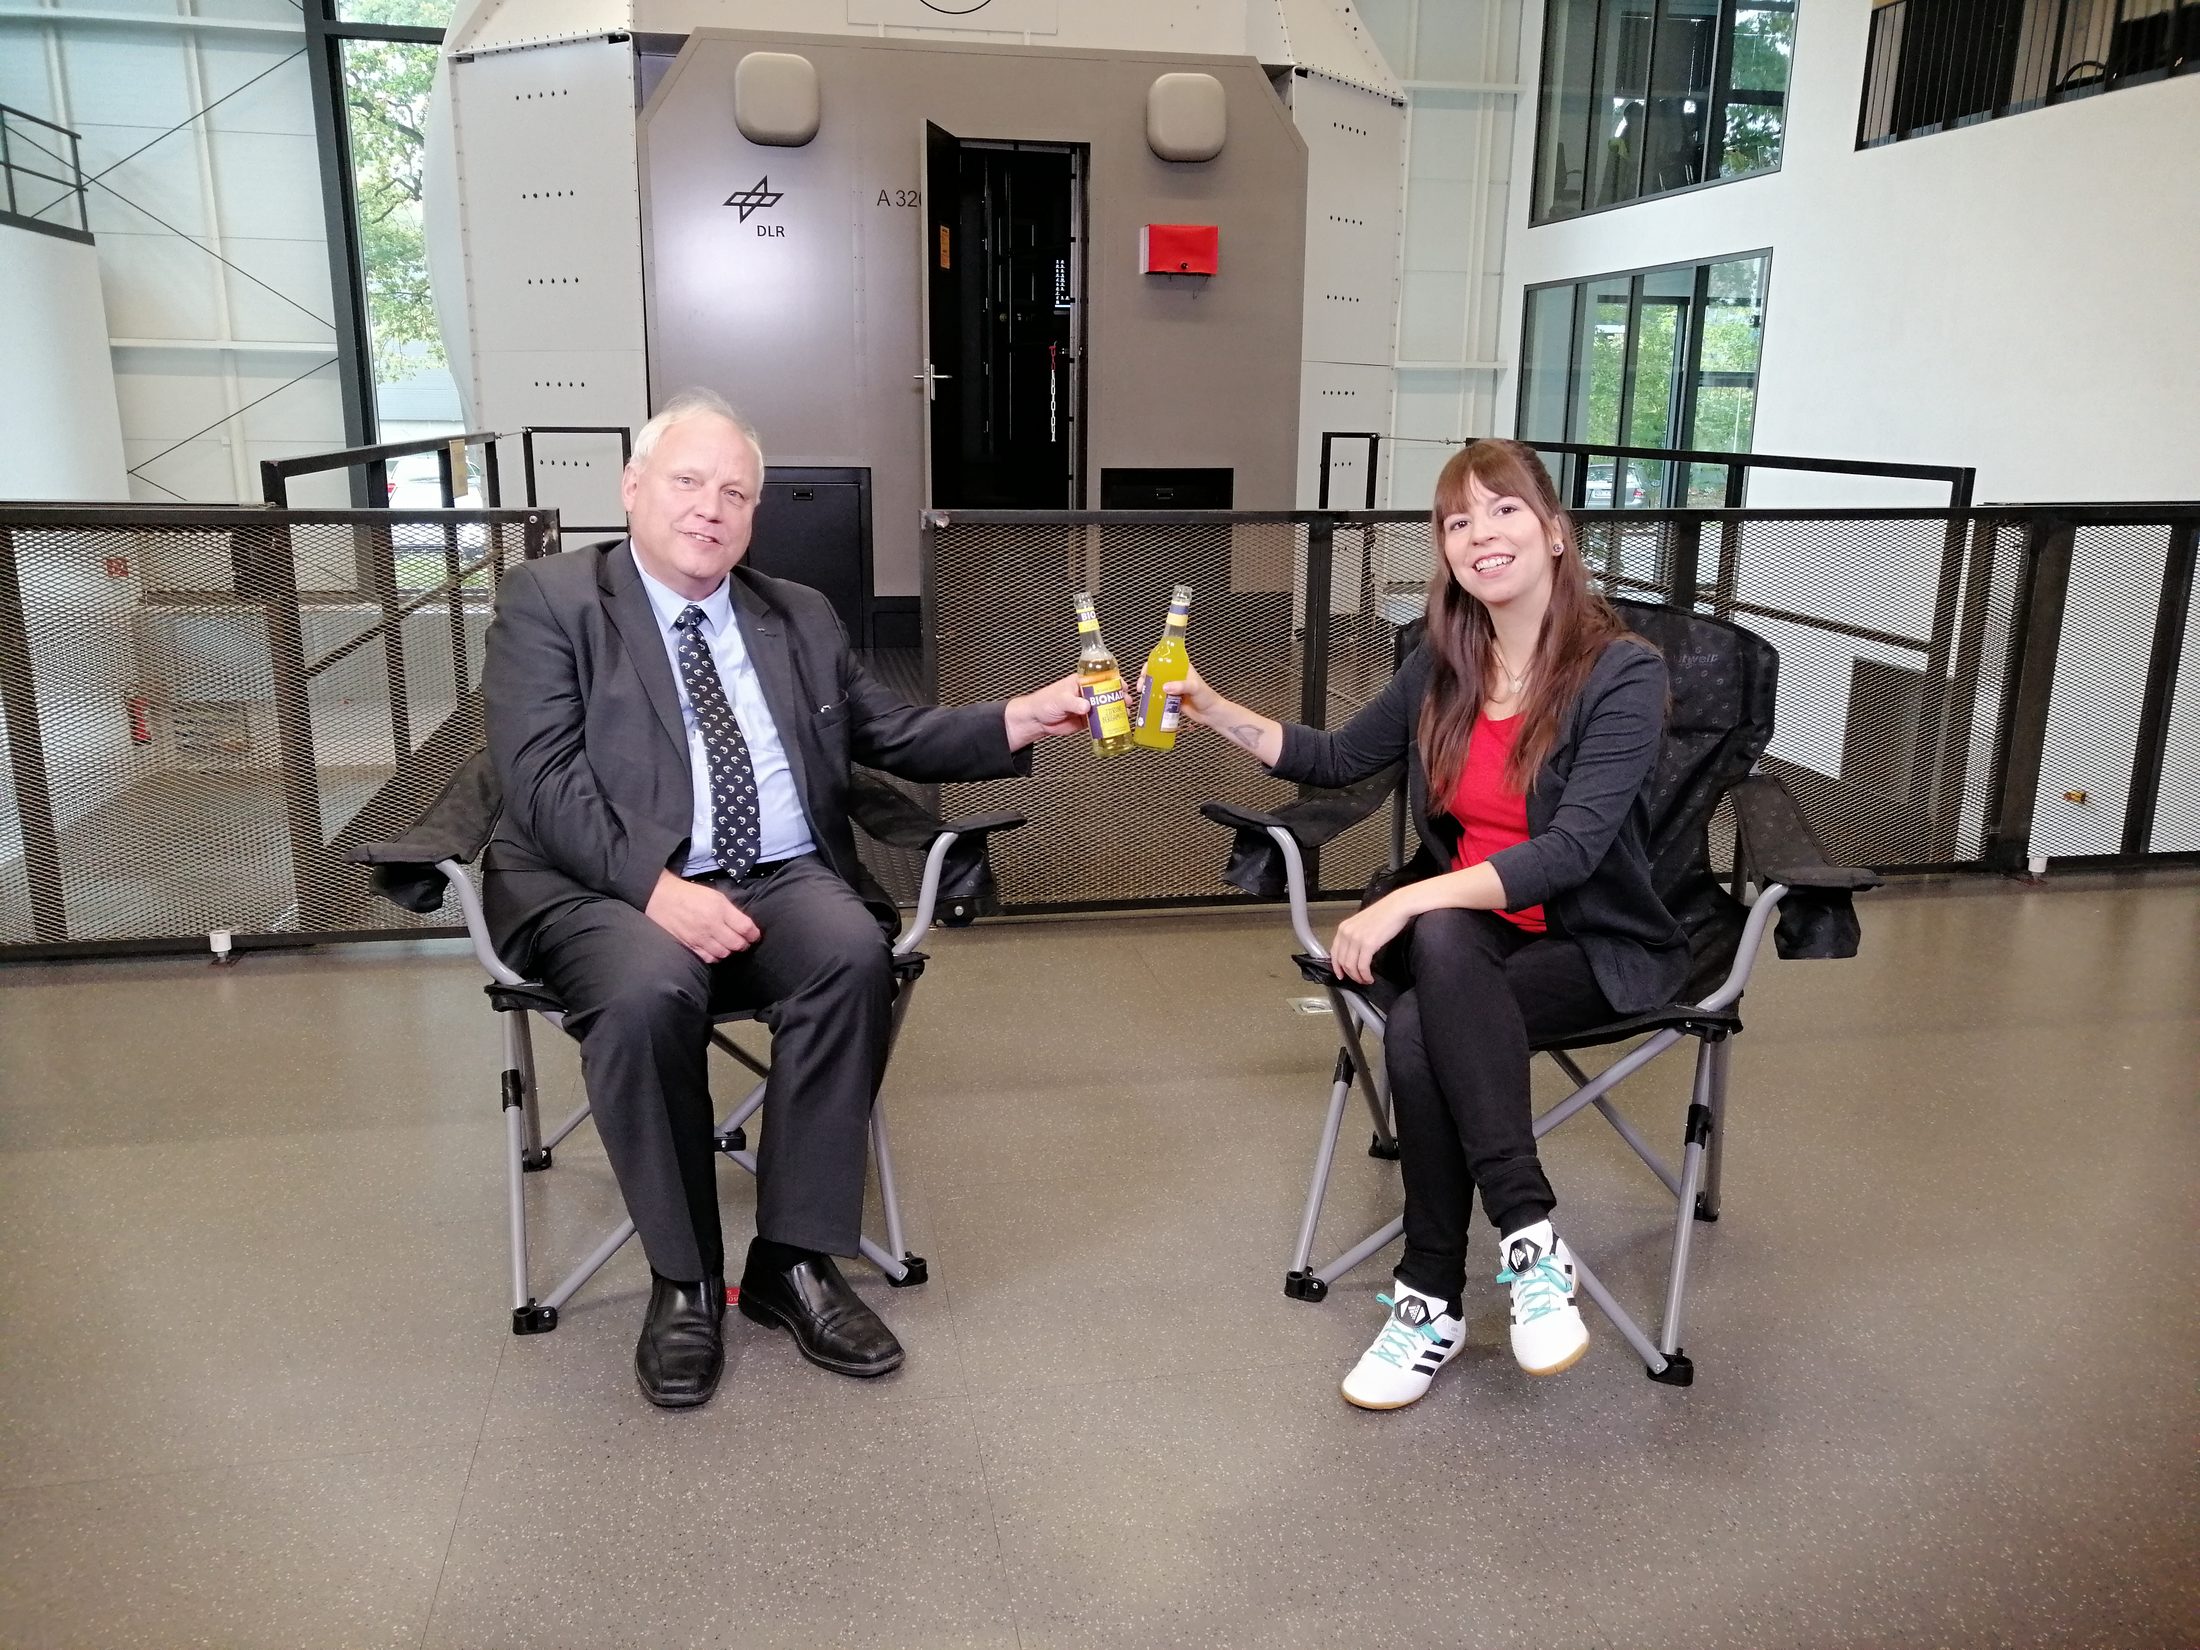 Prof. Dr. Joachim Block und Jennifer Haacke beim Videodreh für die Reihe "Auf eine Limo mit" in unseren Setstühlen. Die Limos dürfen natürlich auch nicht fehlen. (Wird bei Klick vergrößert)